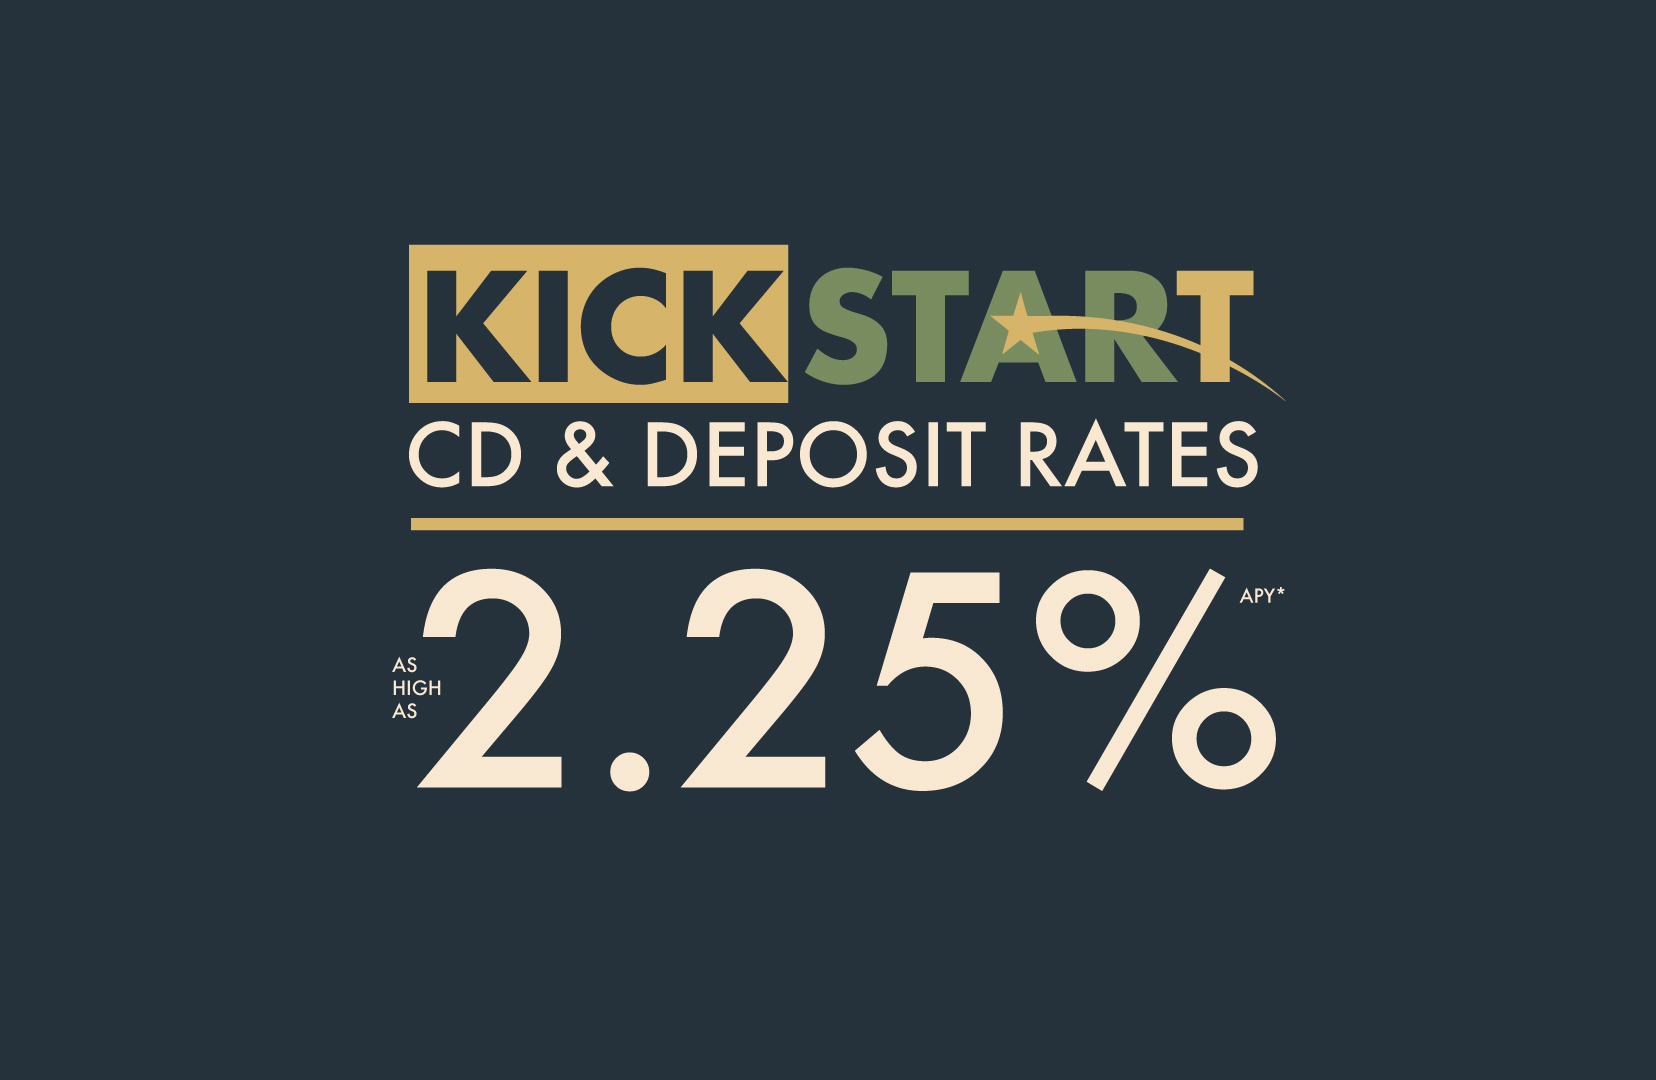 Kickstart CD & Deposit Rates